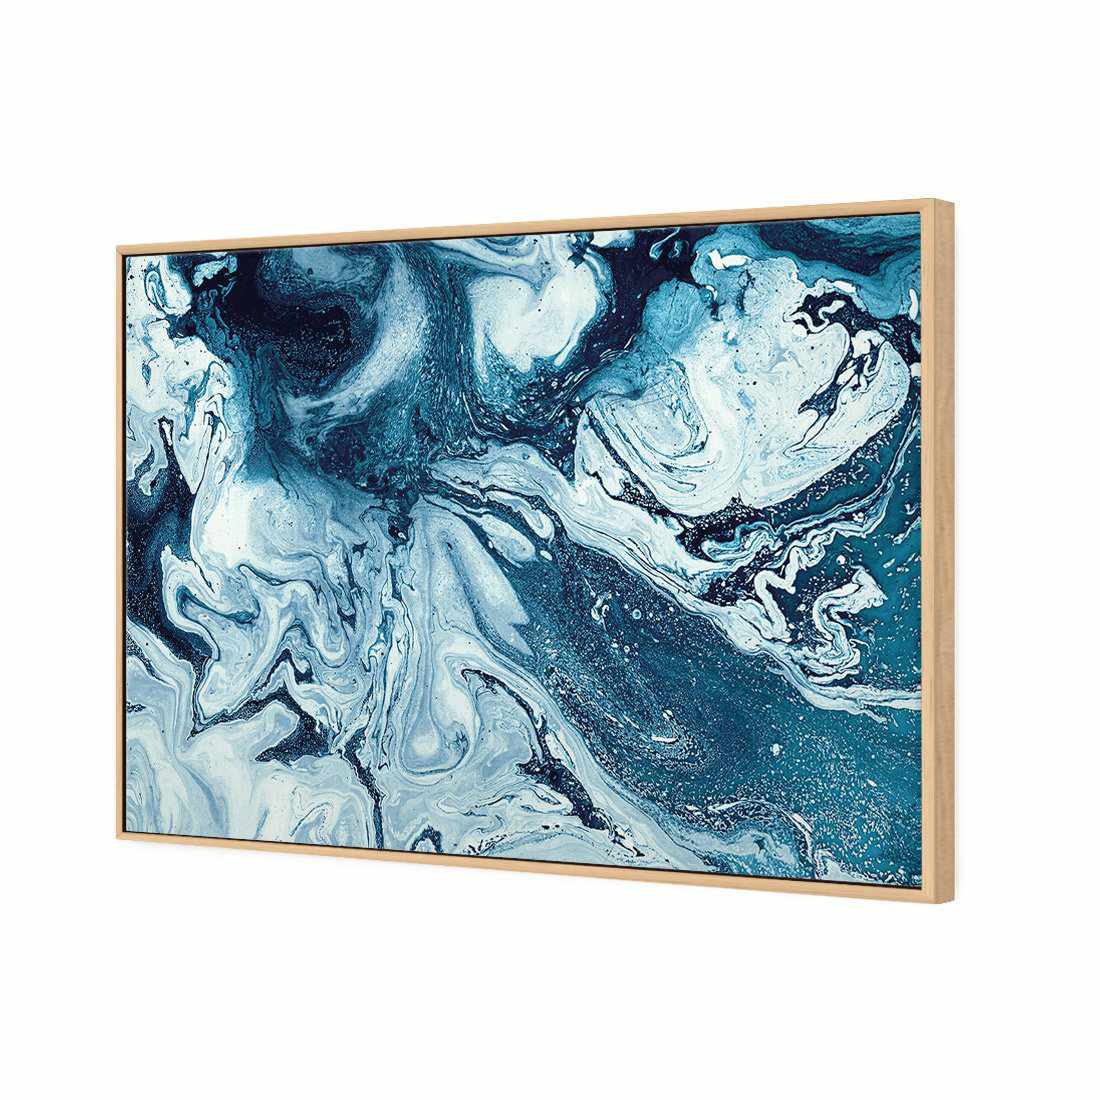 Liquified, Deep Blue Canvas Art-Canvas-Wall Art Designs-45x30cm-Canvas - Oak Frame-Wall Art Designs